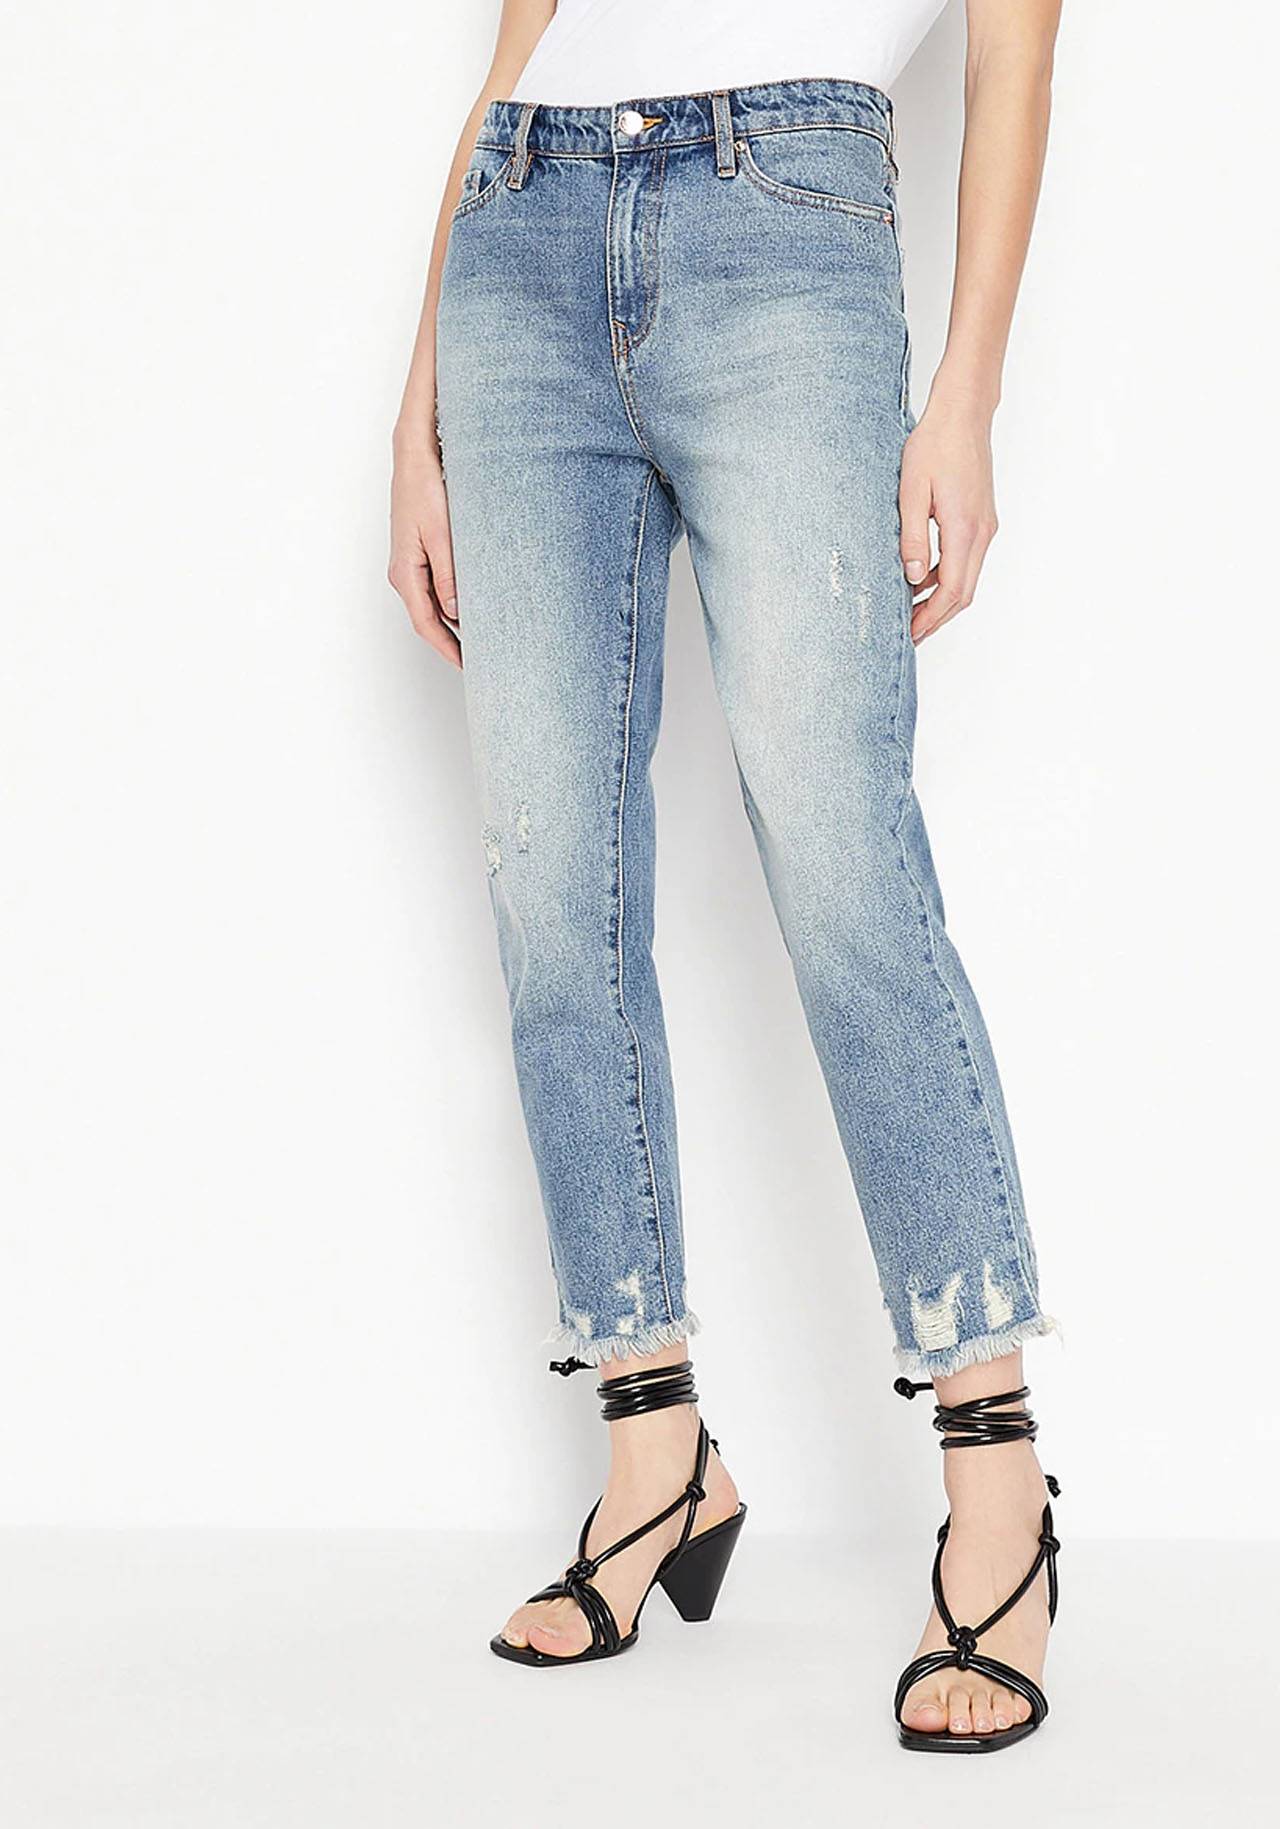 calibre Colector lema Virginia Troconis confirma que los jeans deshilachados favorecen mucho si  tienes más de 40